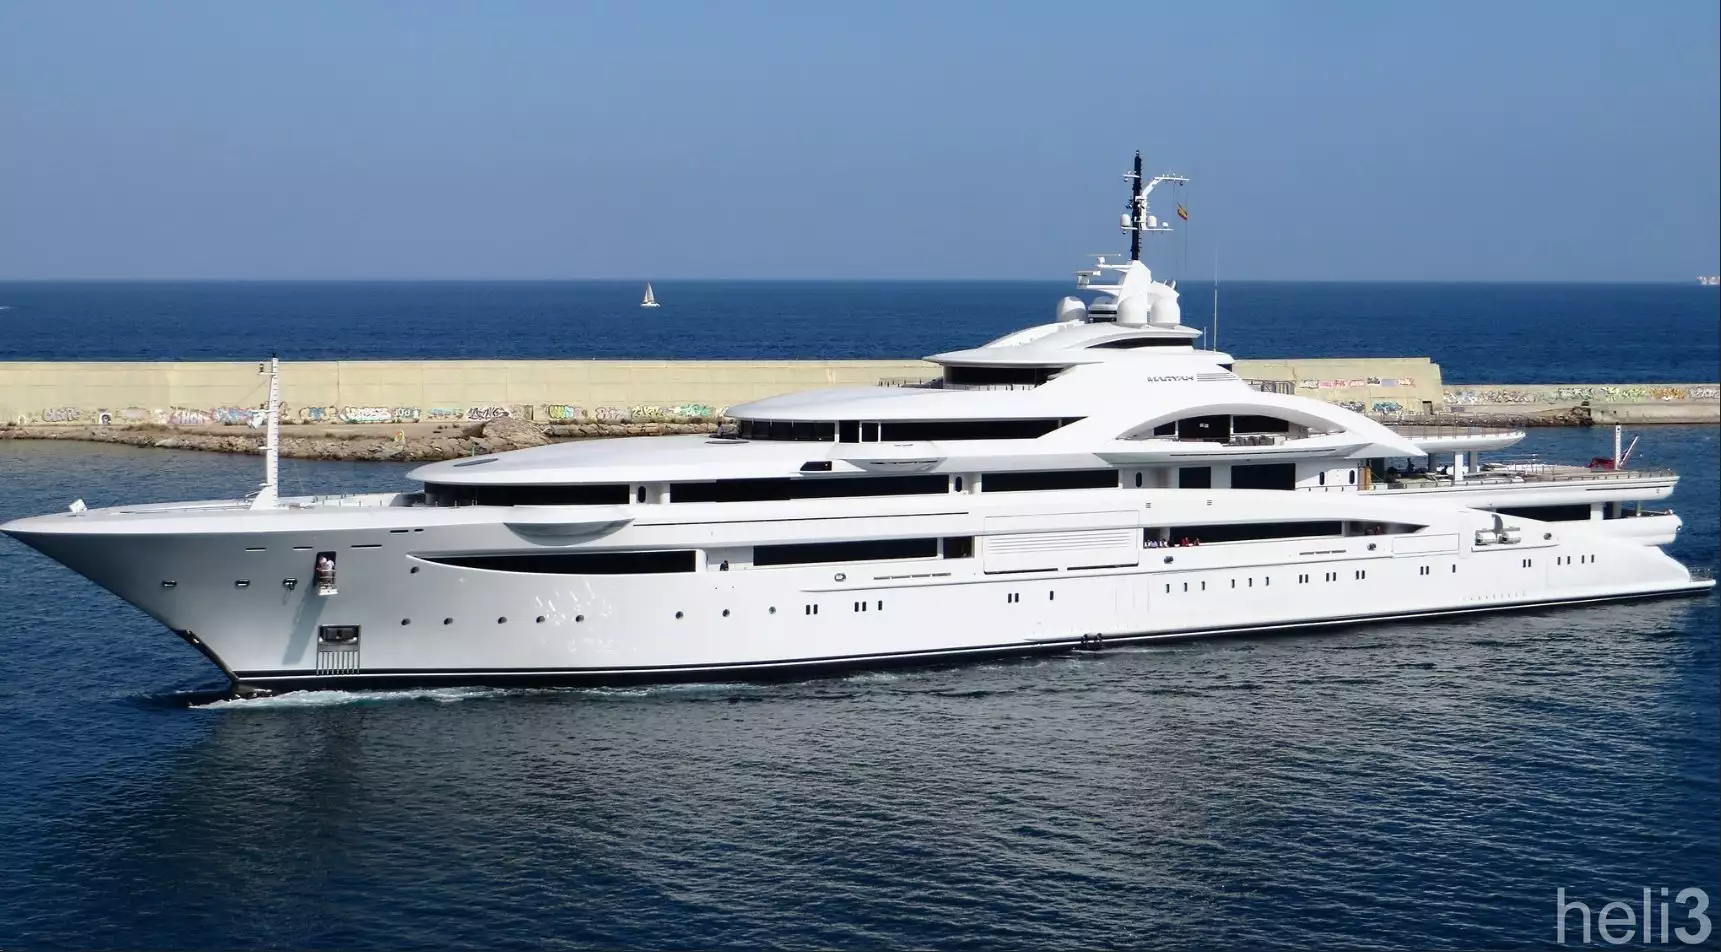 Maryah yacht - 2015 - proprietario Sheikh Tahnoon bin Zayed